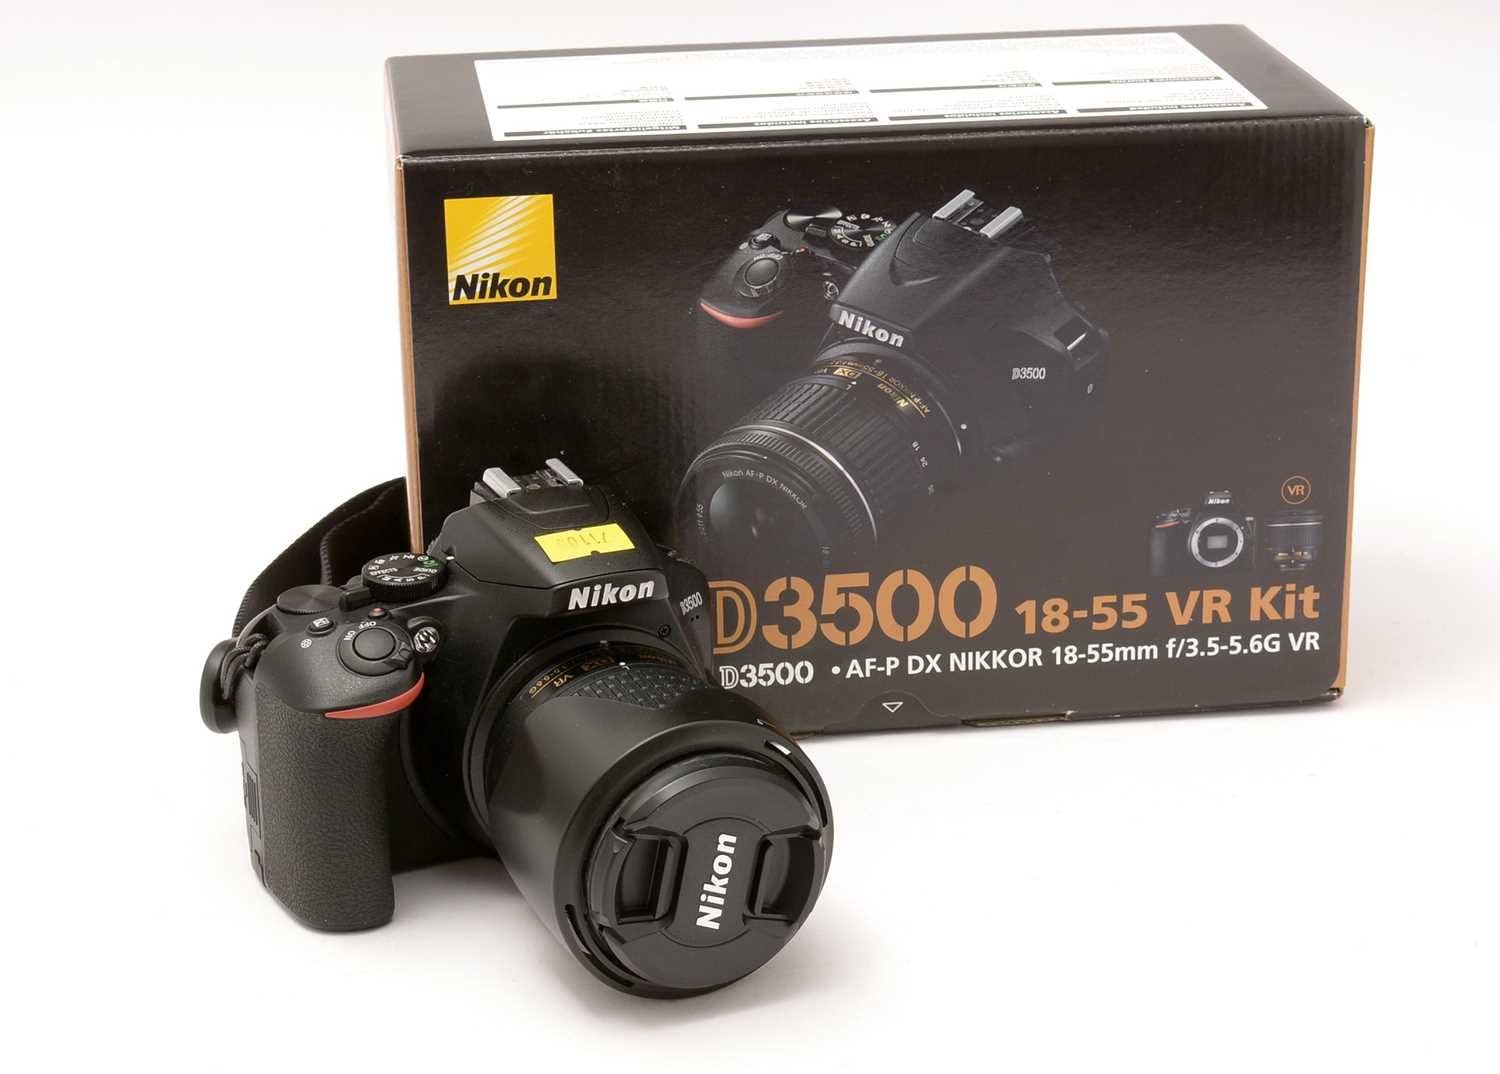 354 - A Nikon D3500 camera kit.